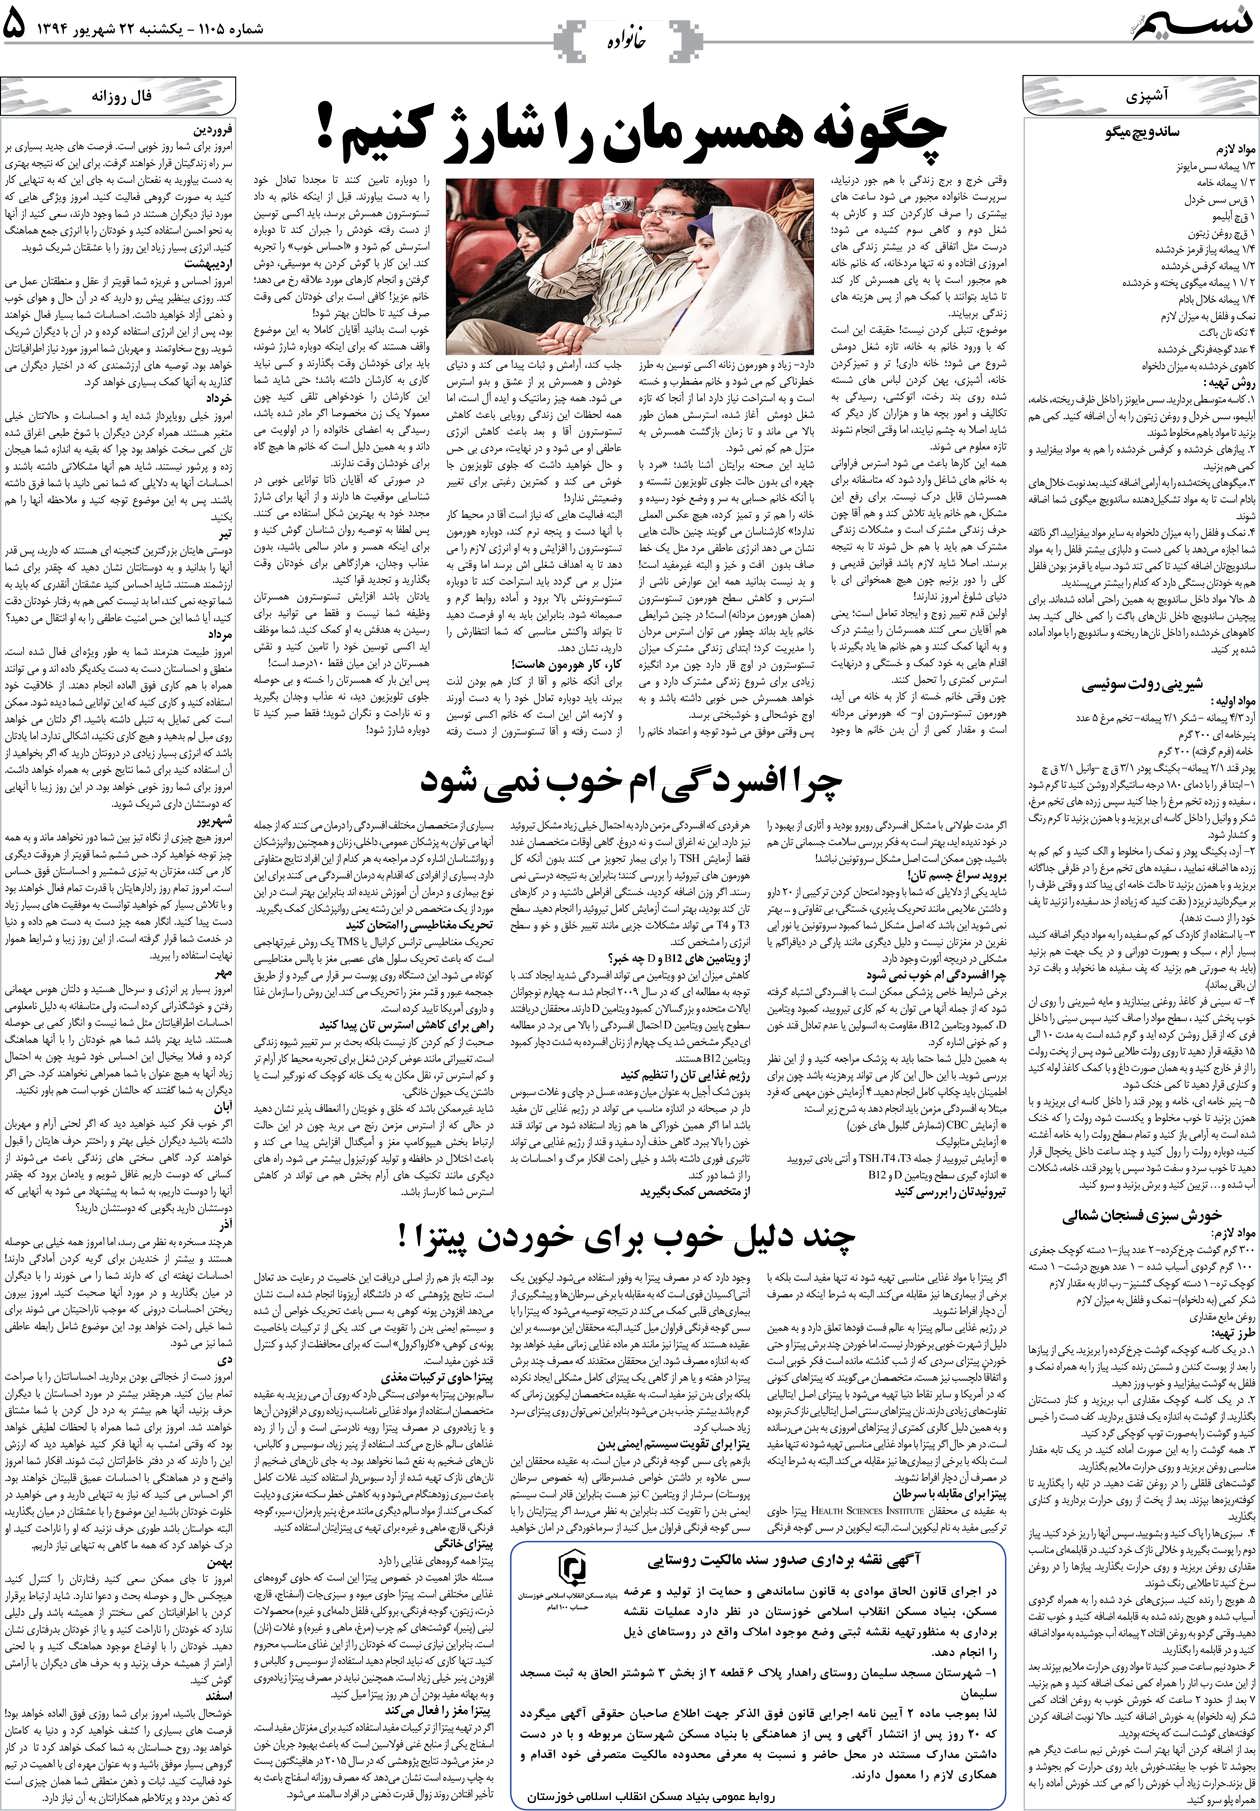 صفحه خانواده روزنامه نسیم شماره 1105